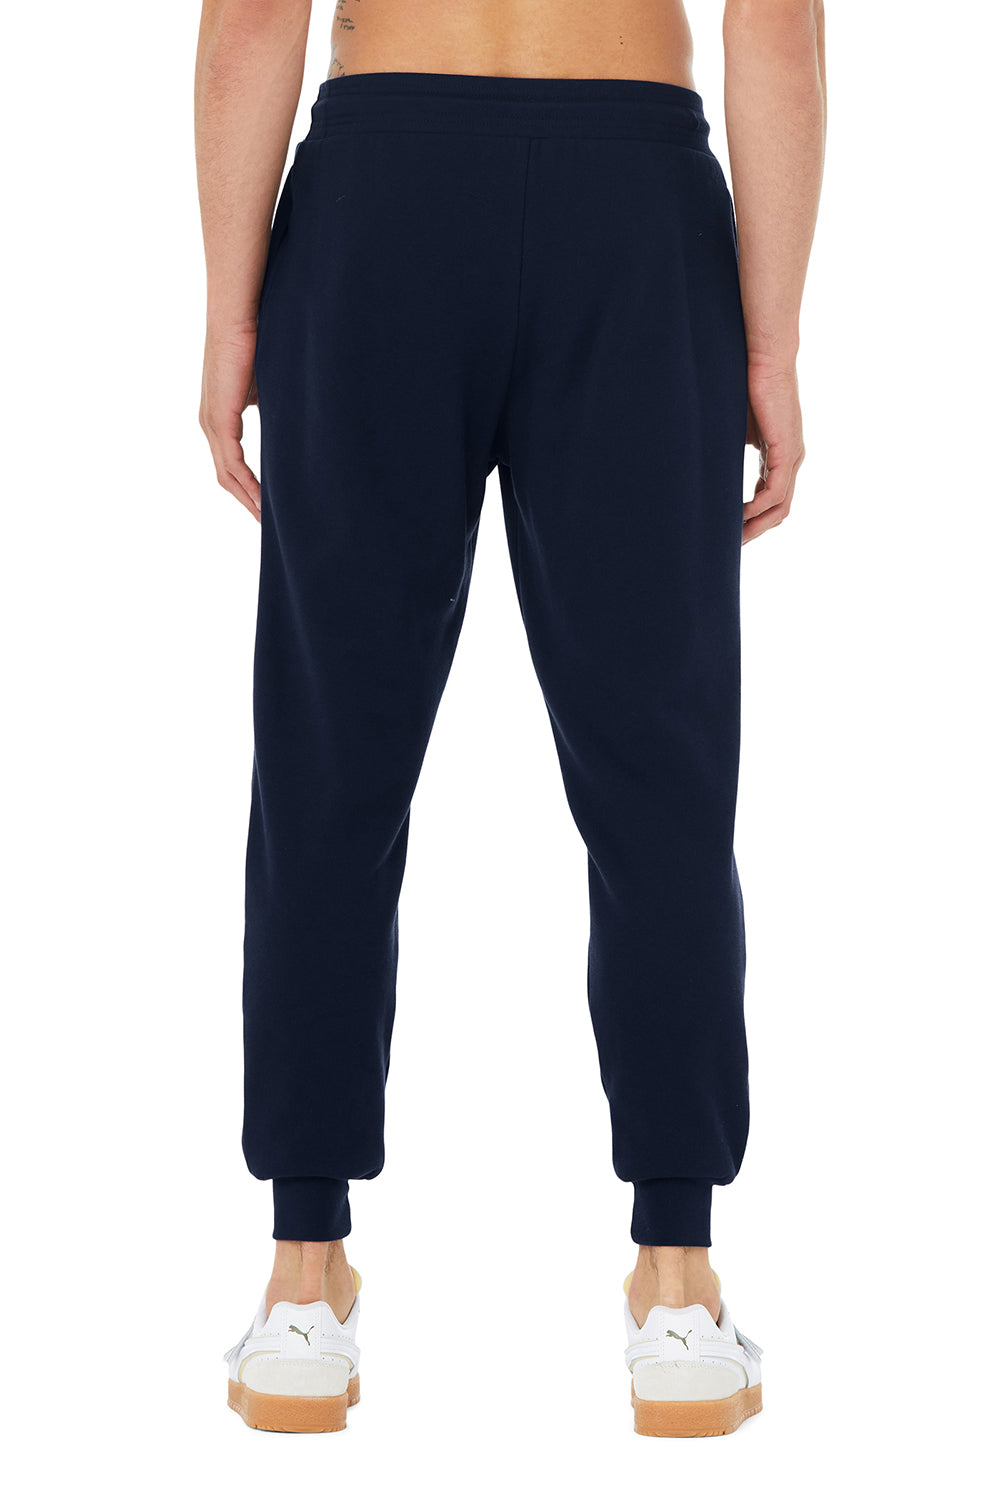 Bella + Canvas BC3727 Mens Jogger Sweatpants w/ Pockets Navy Blue Model Back